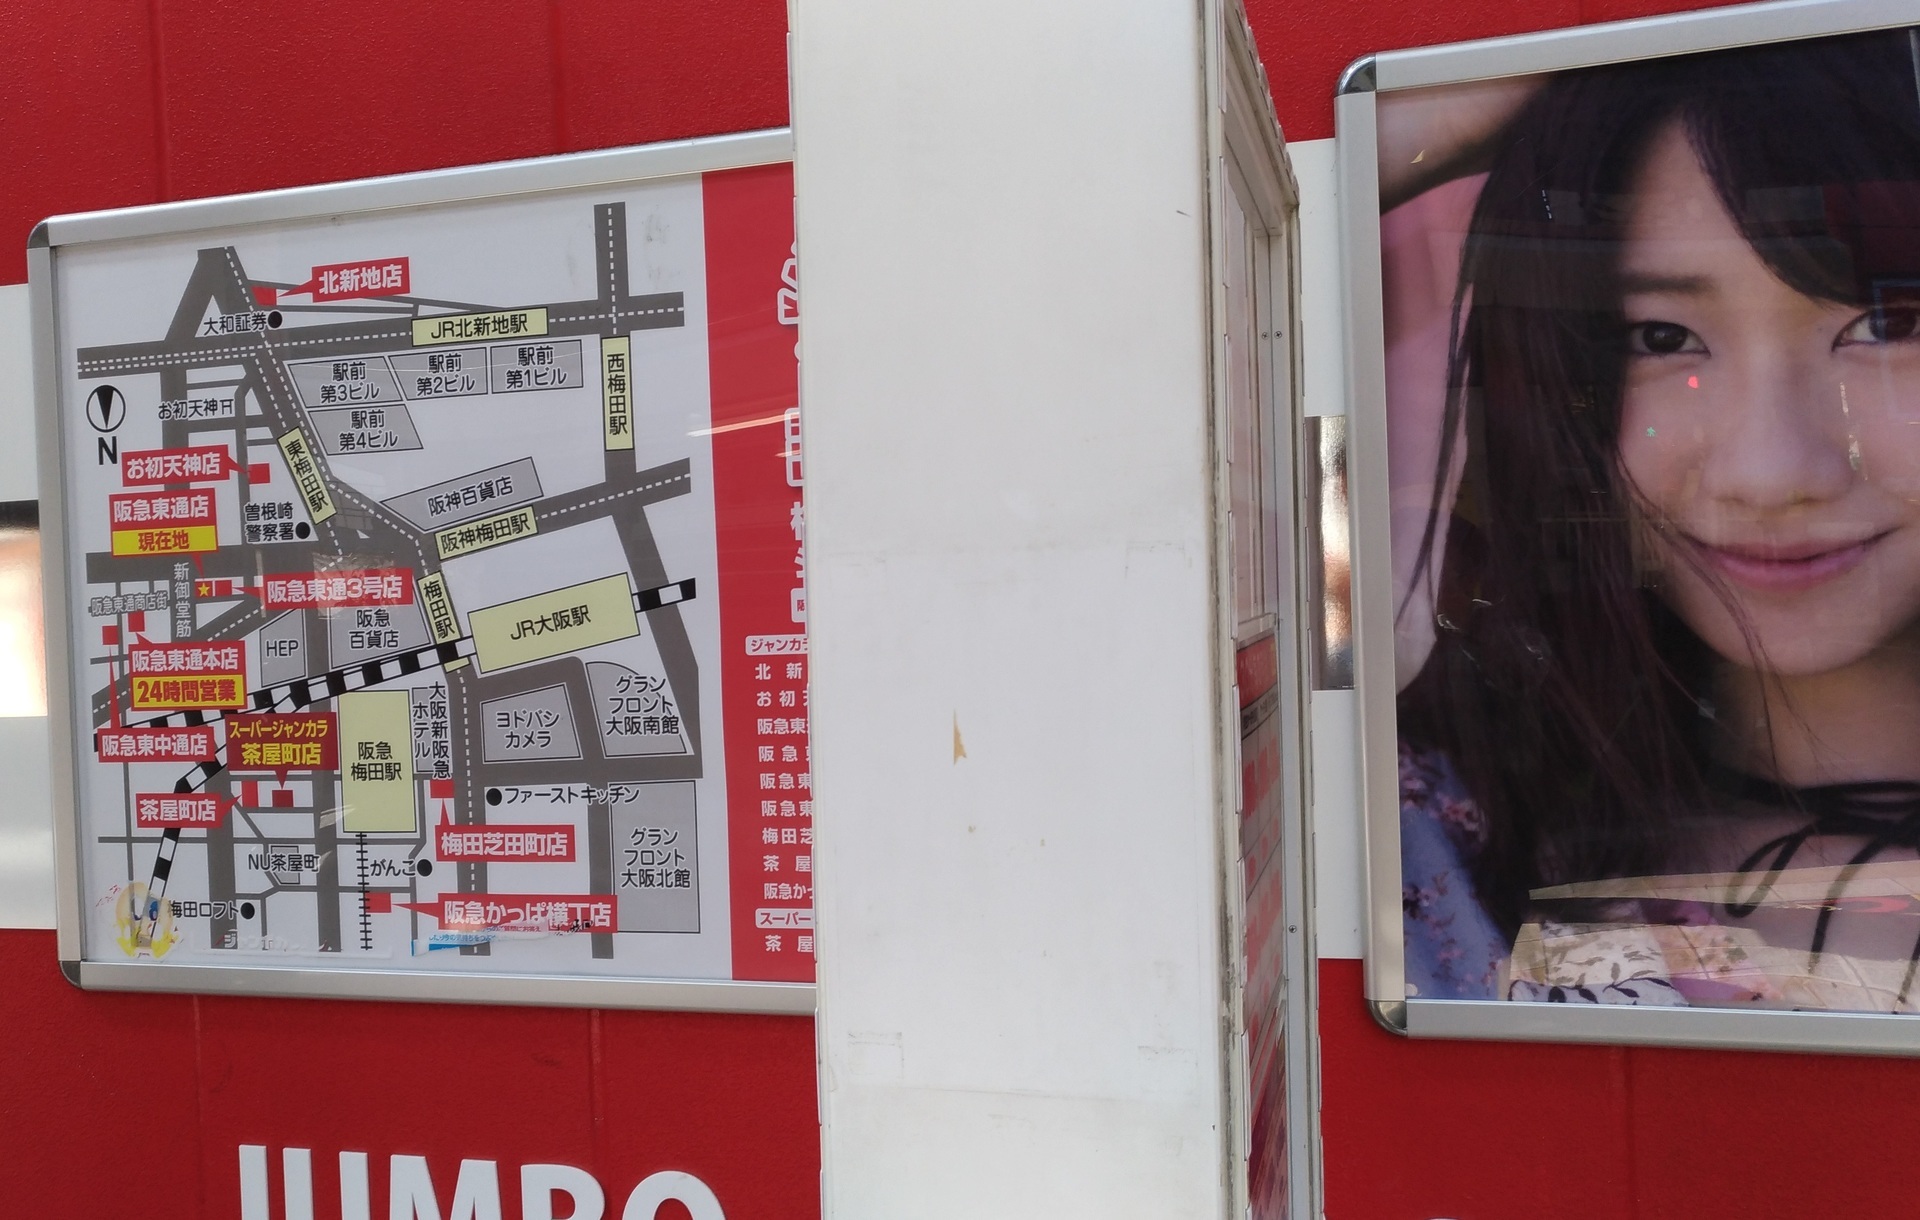 柏木由紀 ジャンカラvrコラボキャンペーン梅田の店舗は 大阪市北区中津 賃貸マンションで一人暮らし始めてみました